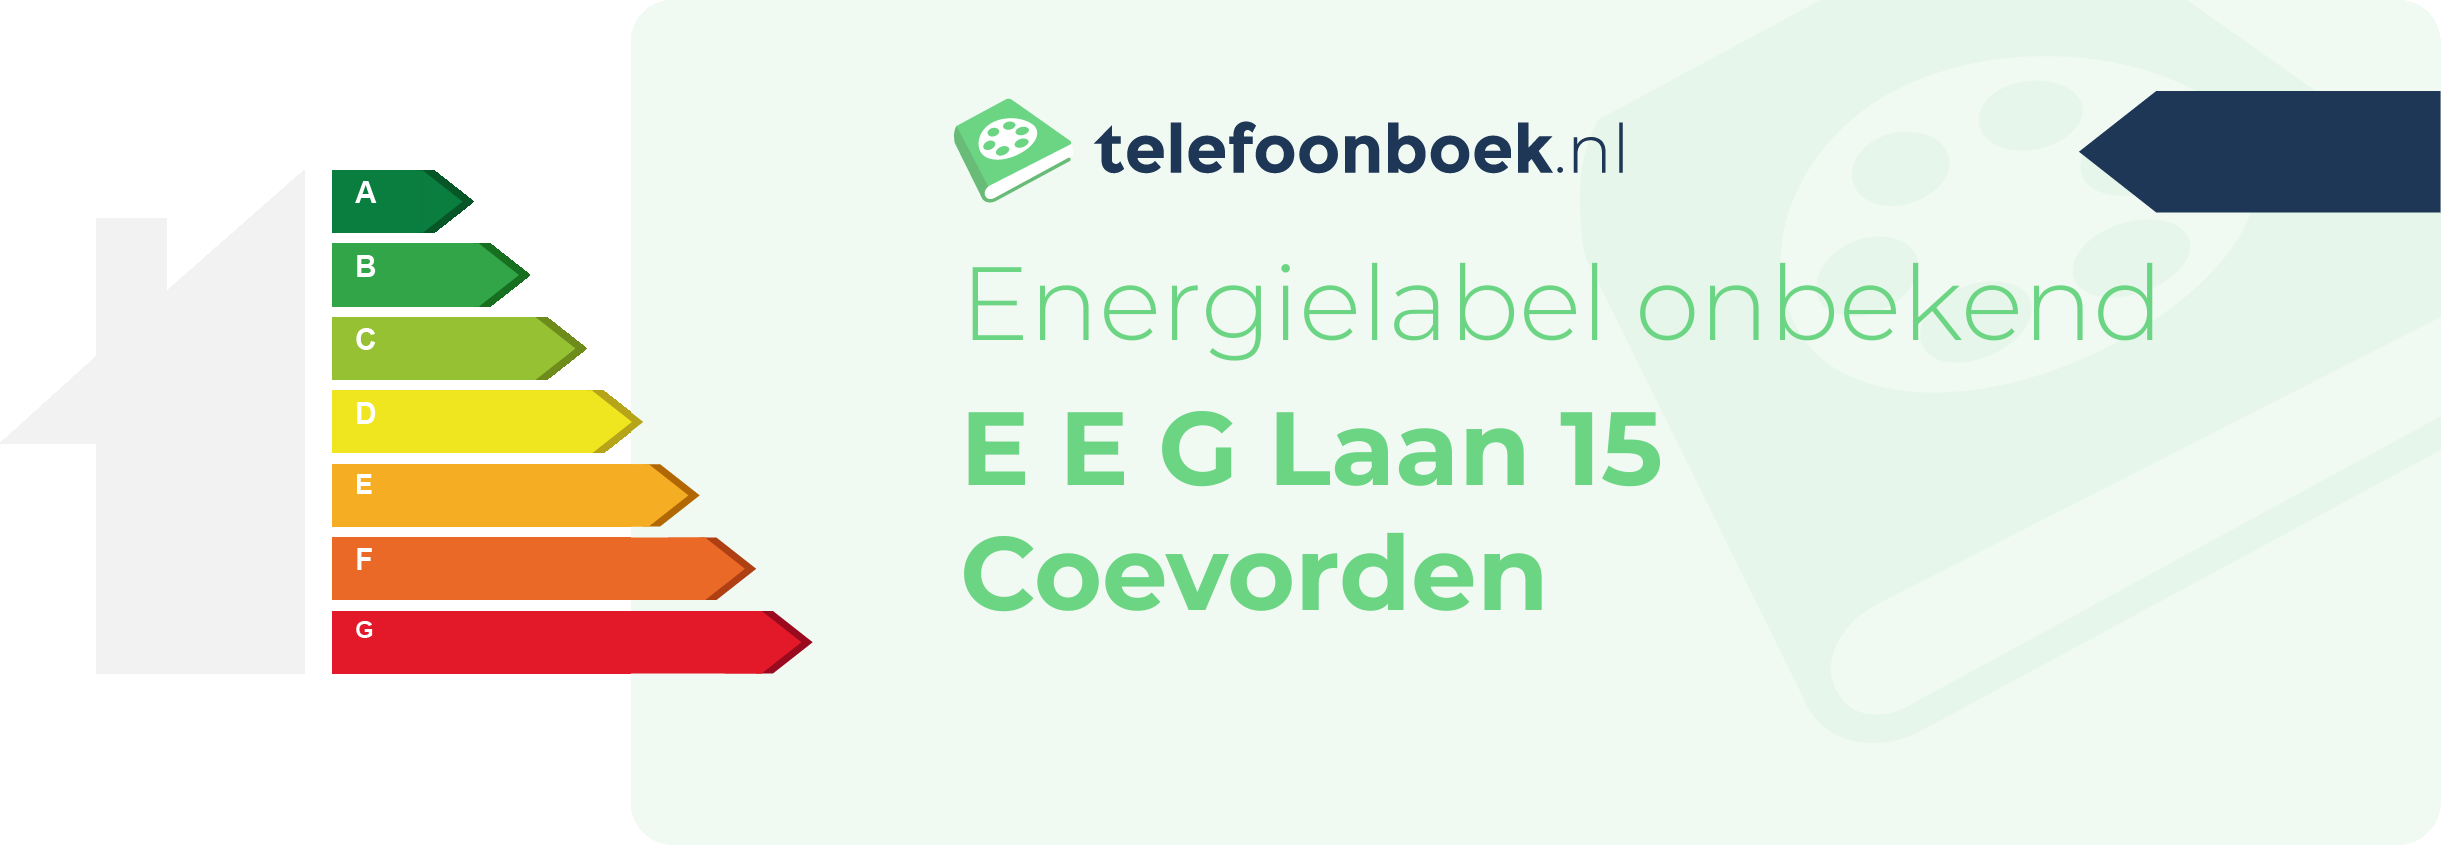 Energielabel E E G Laan 15 Coevorden